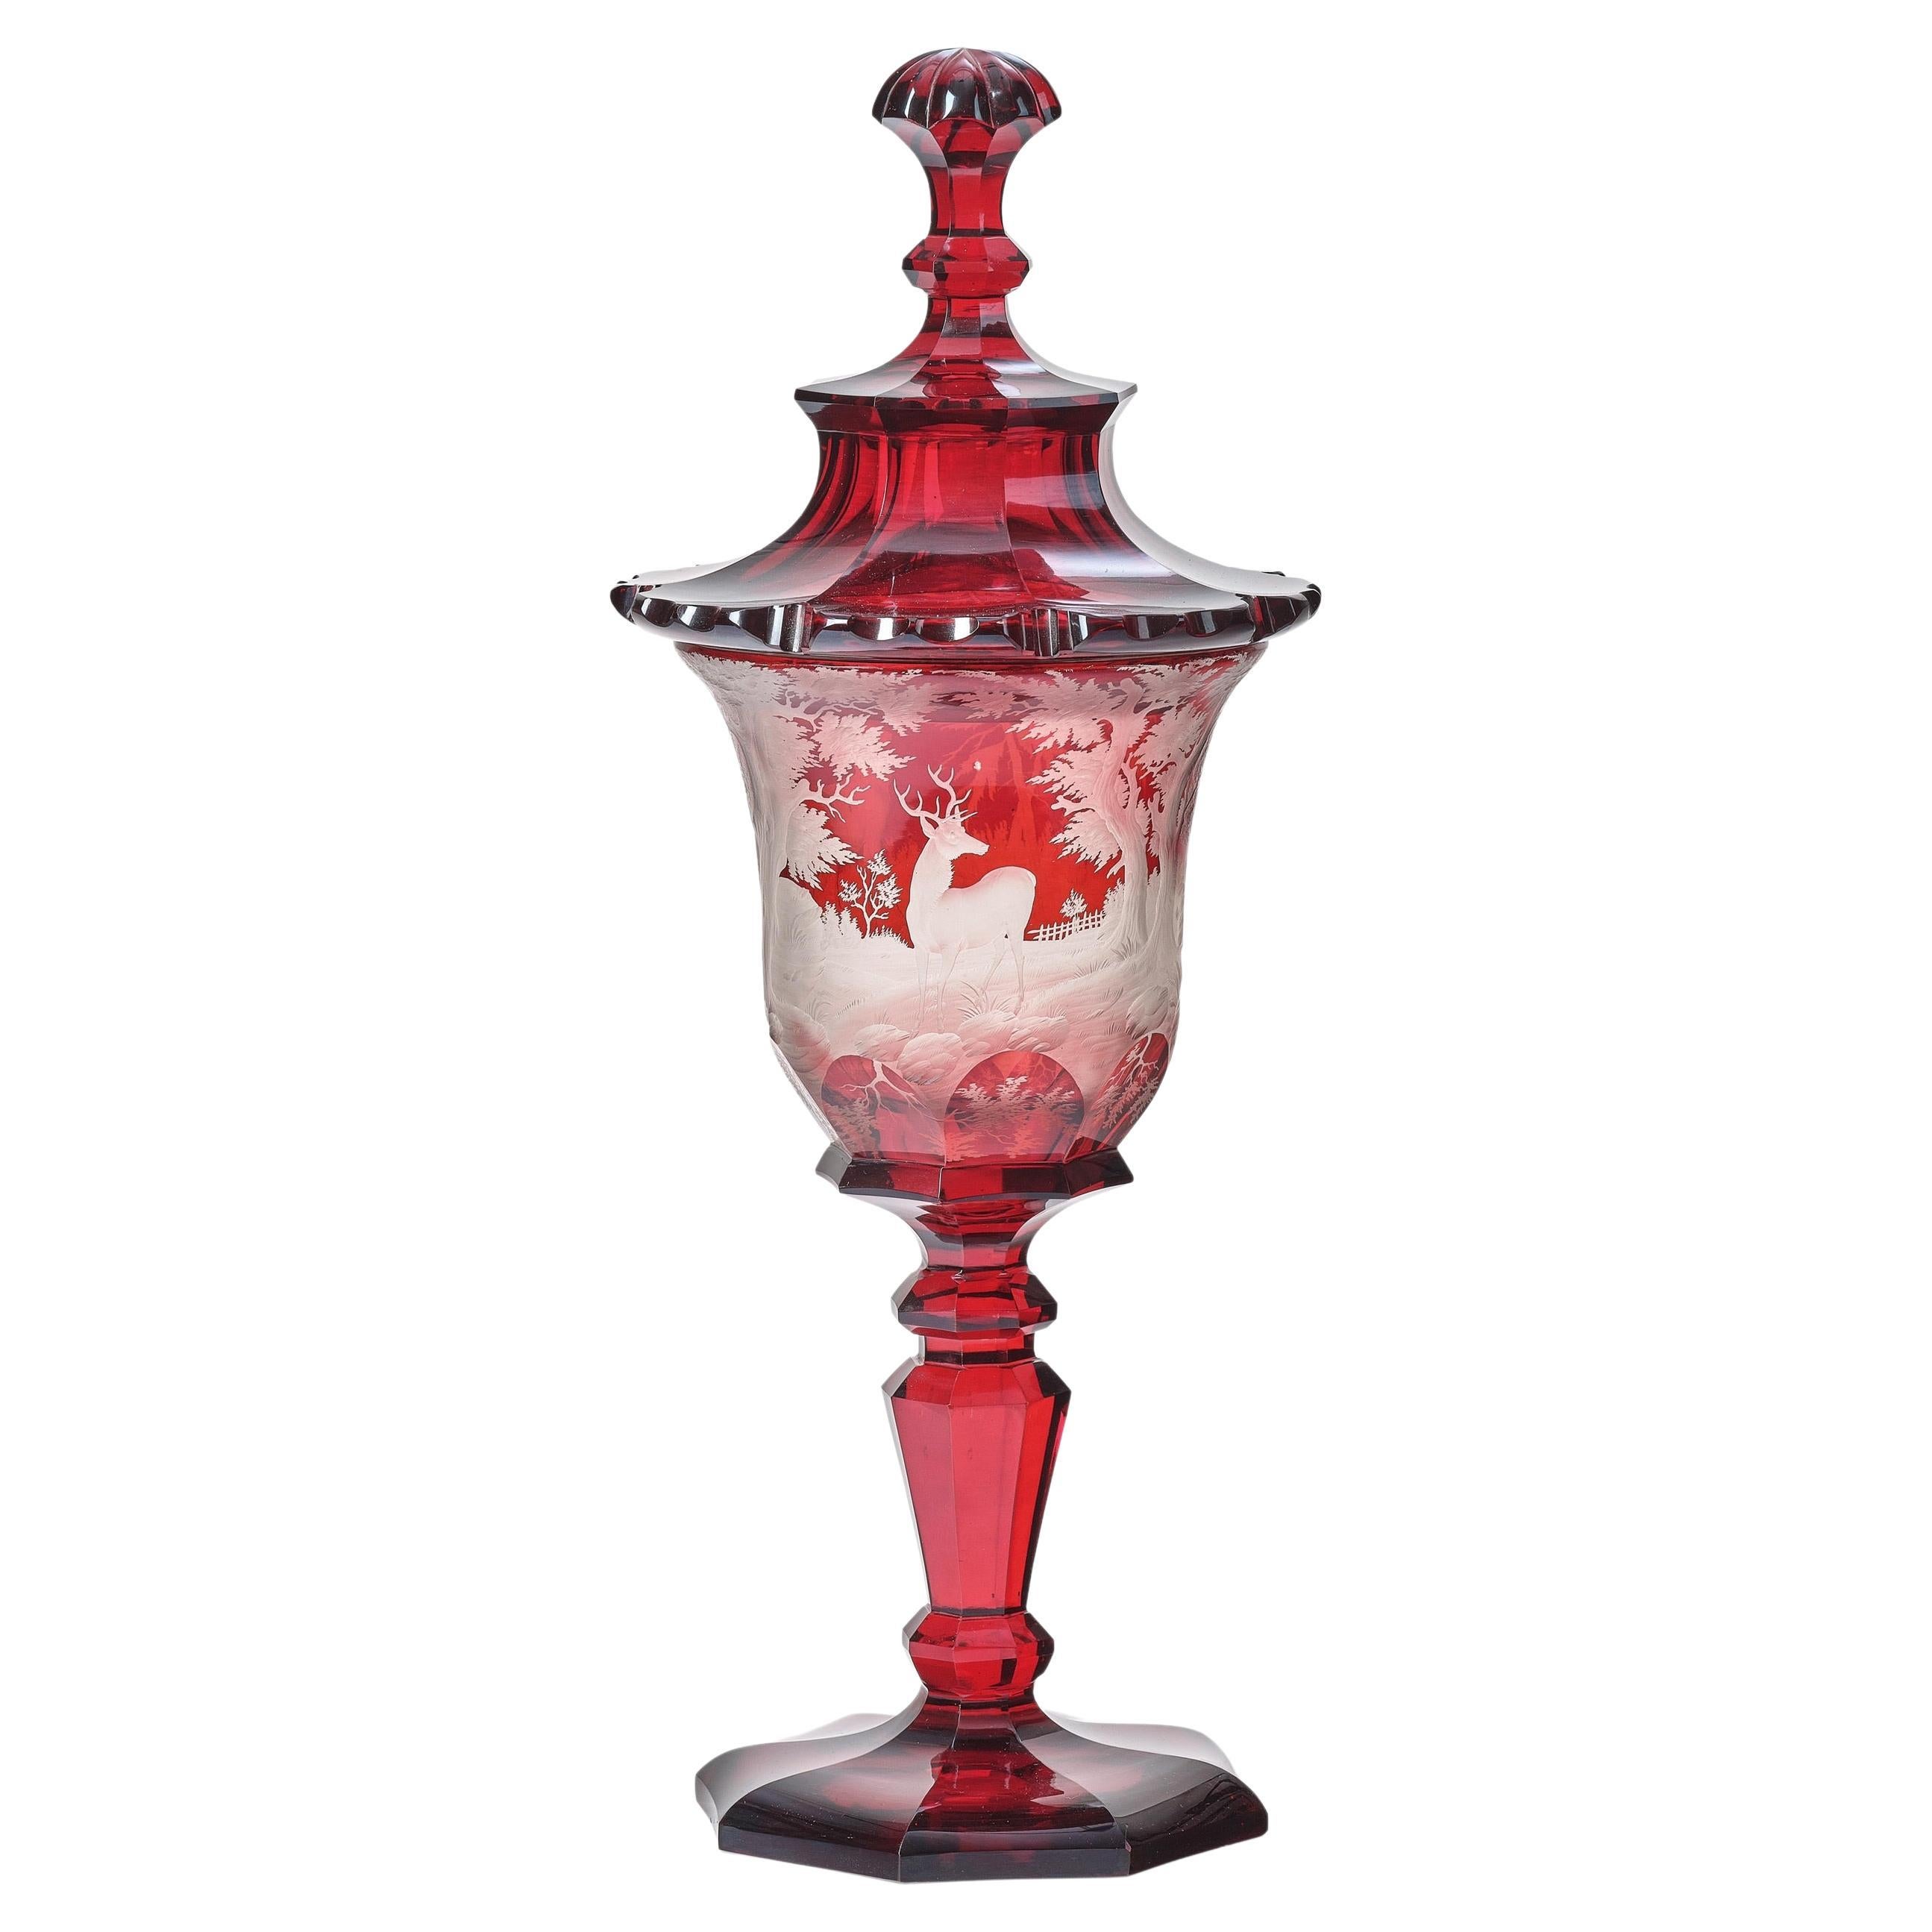 Antique gobelet de Bohème en verre gravé rouge rubis, daté de 1852